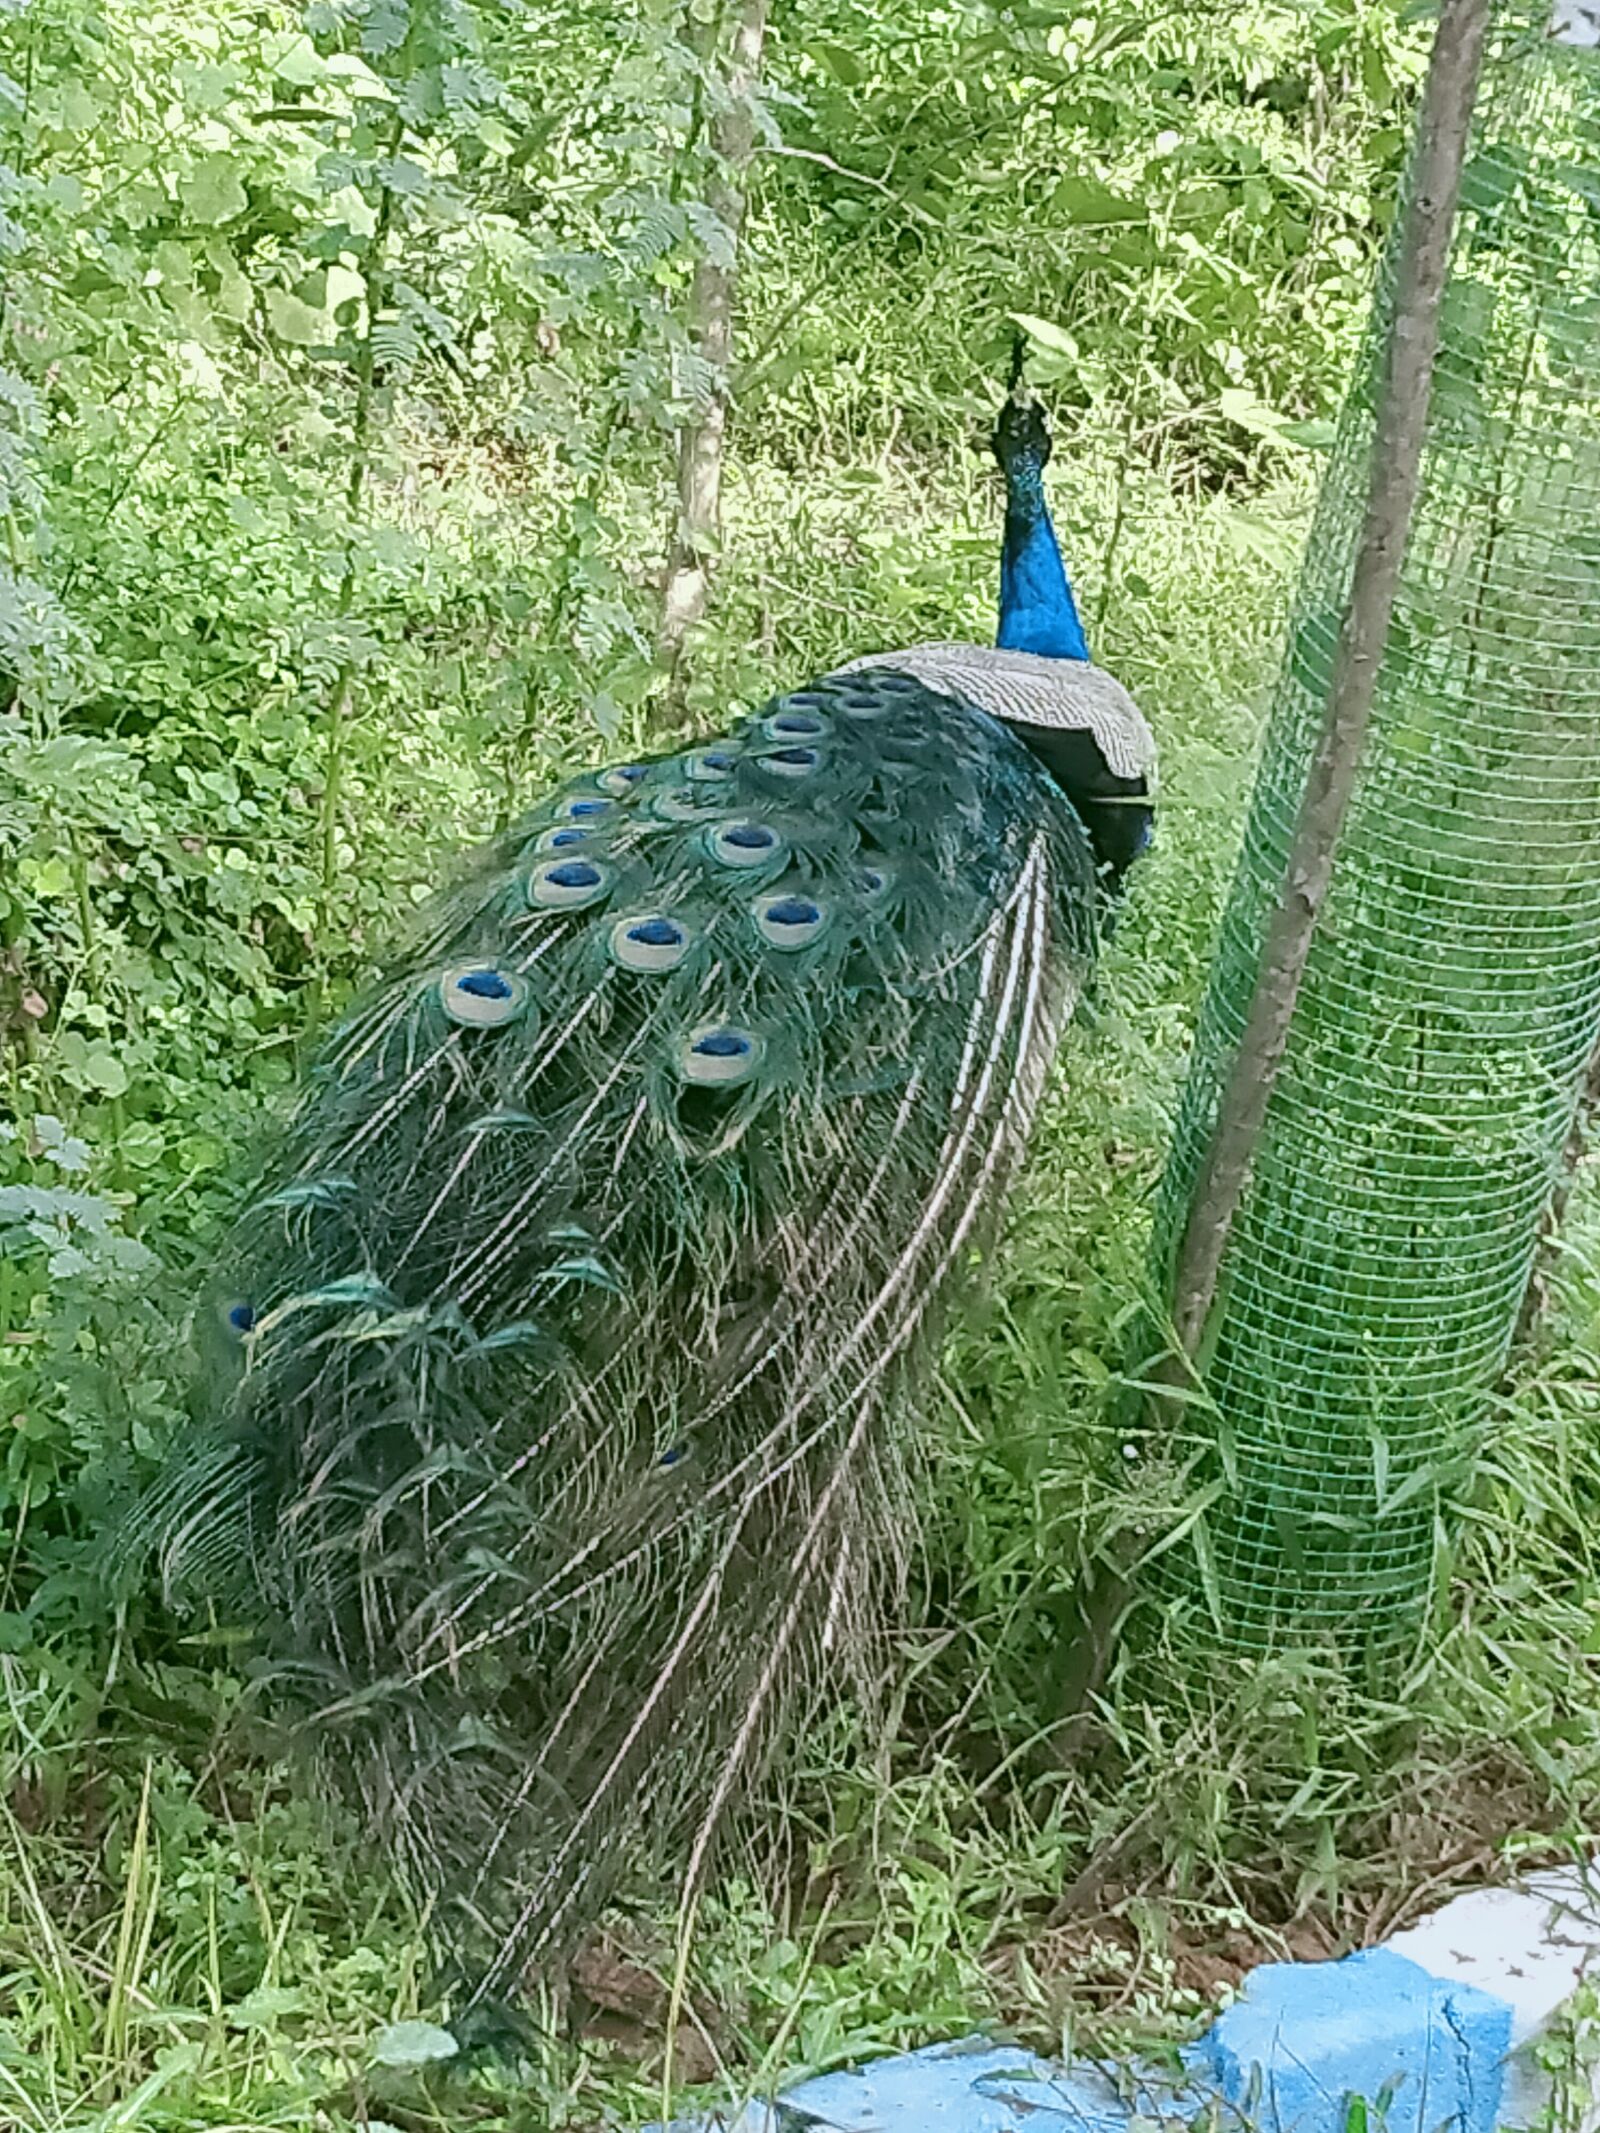 OPPO A5 2020 sample photo. Peacock, birds, park photography